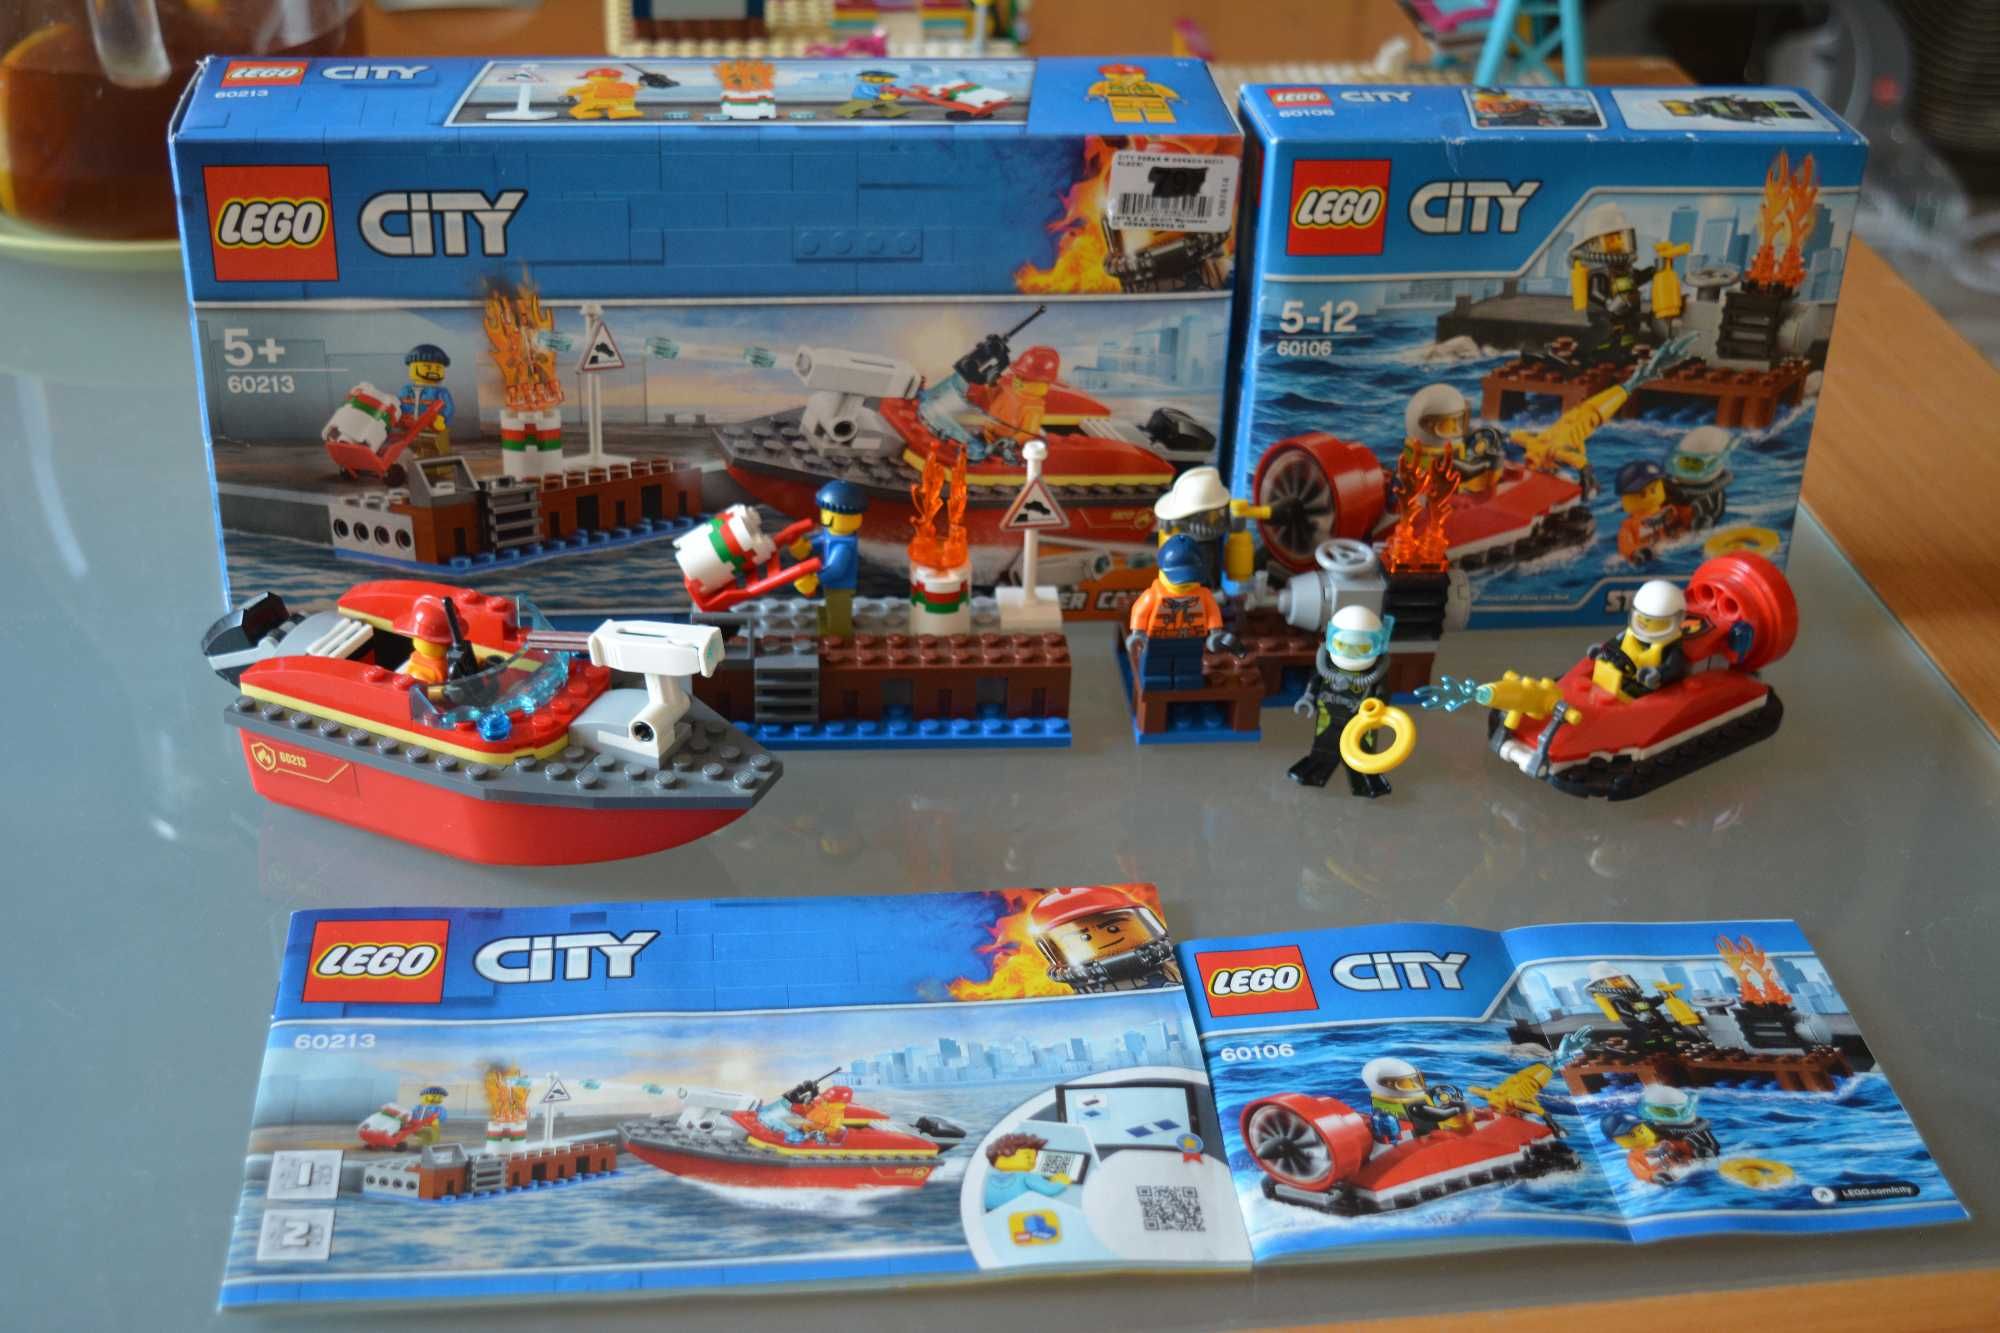 Klocki Lego City numer 60106 i 60213 - strażacy wodniacy :)